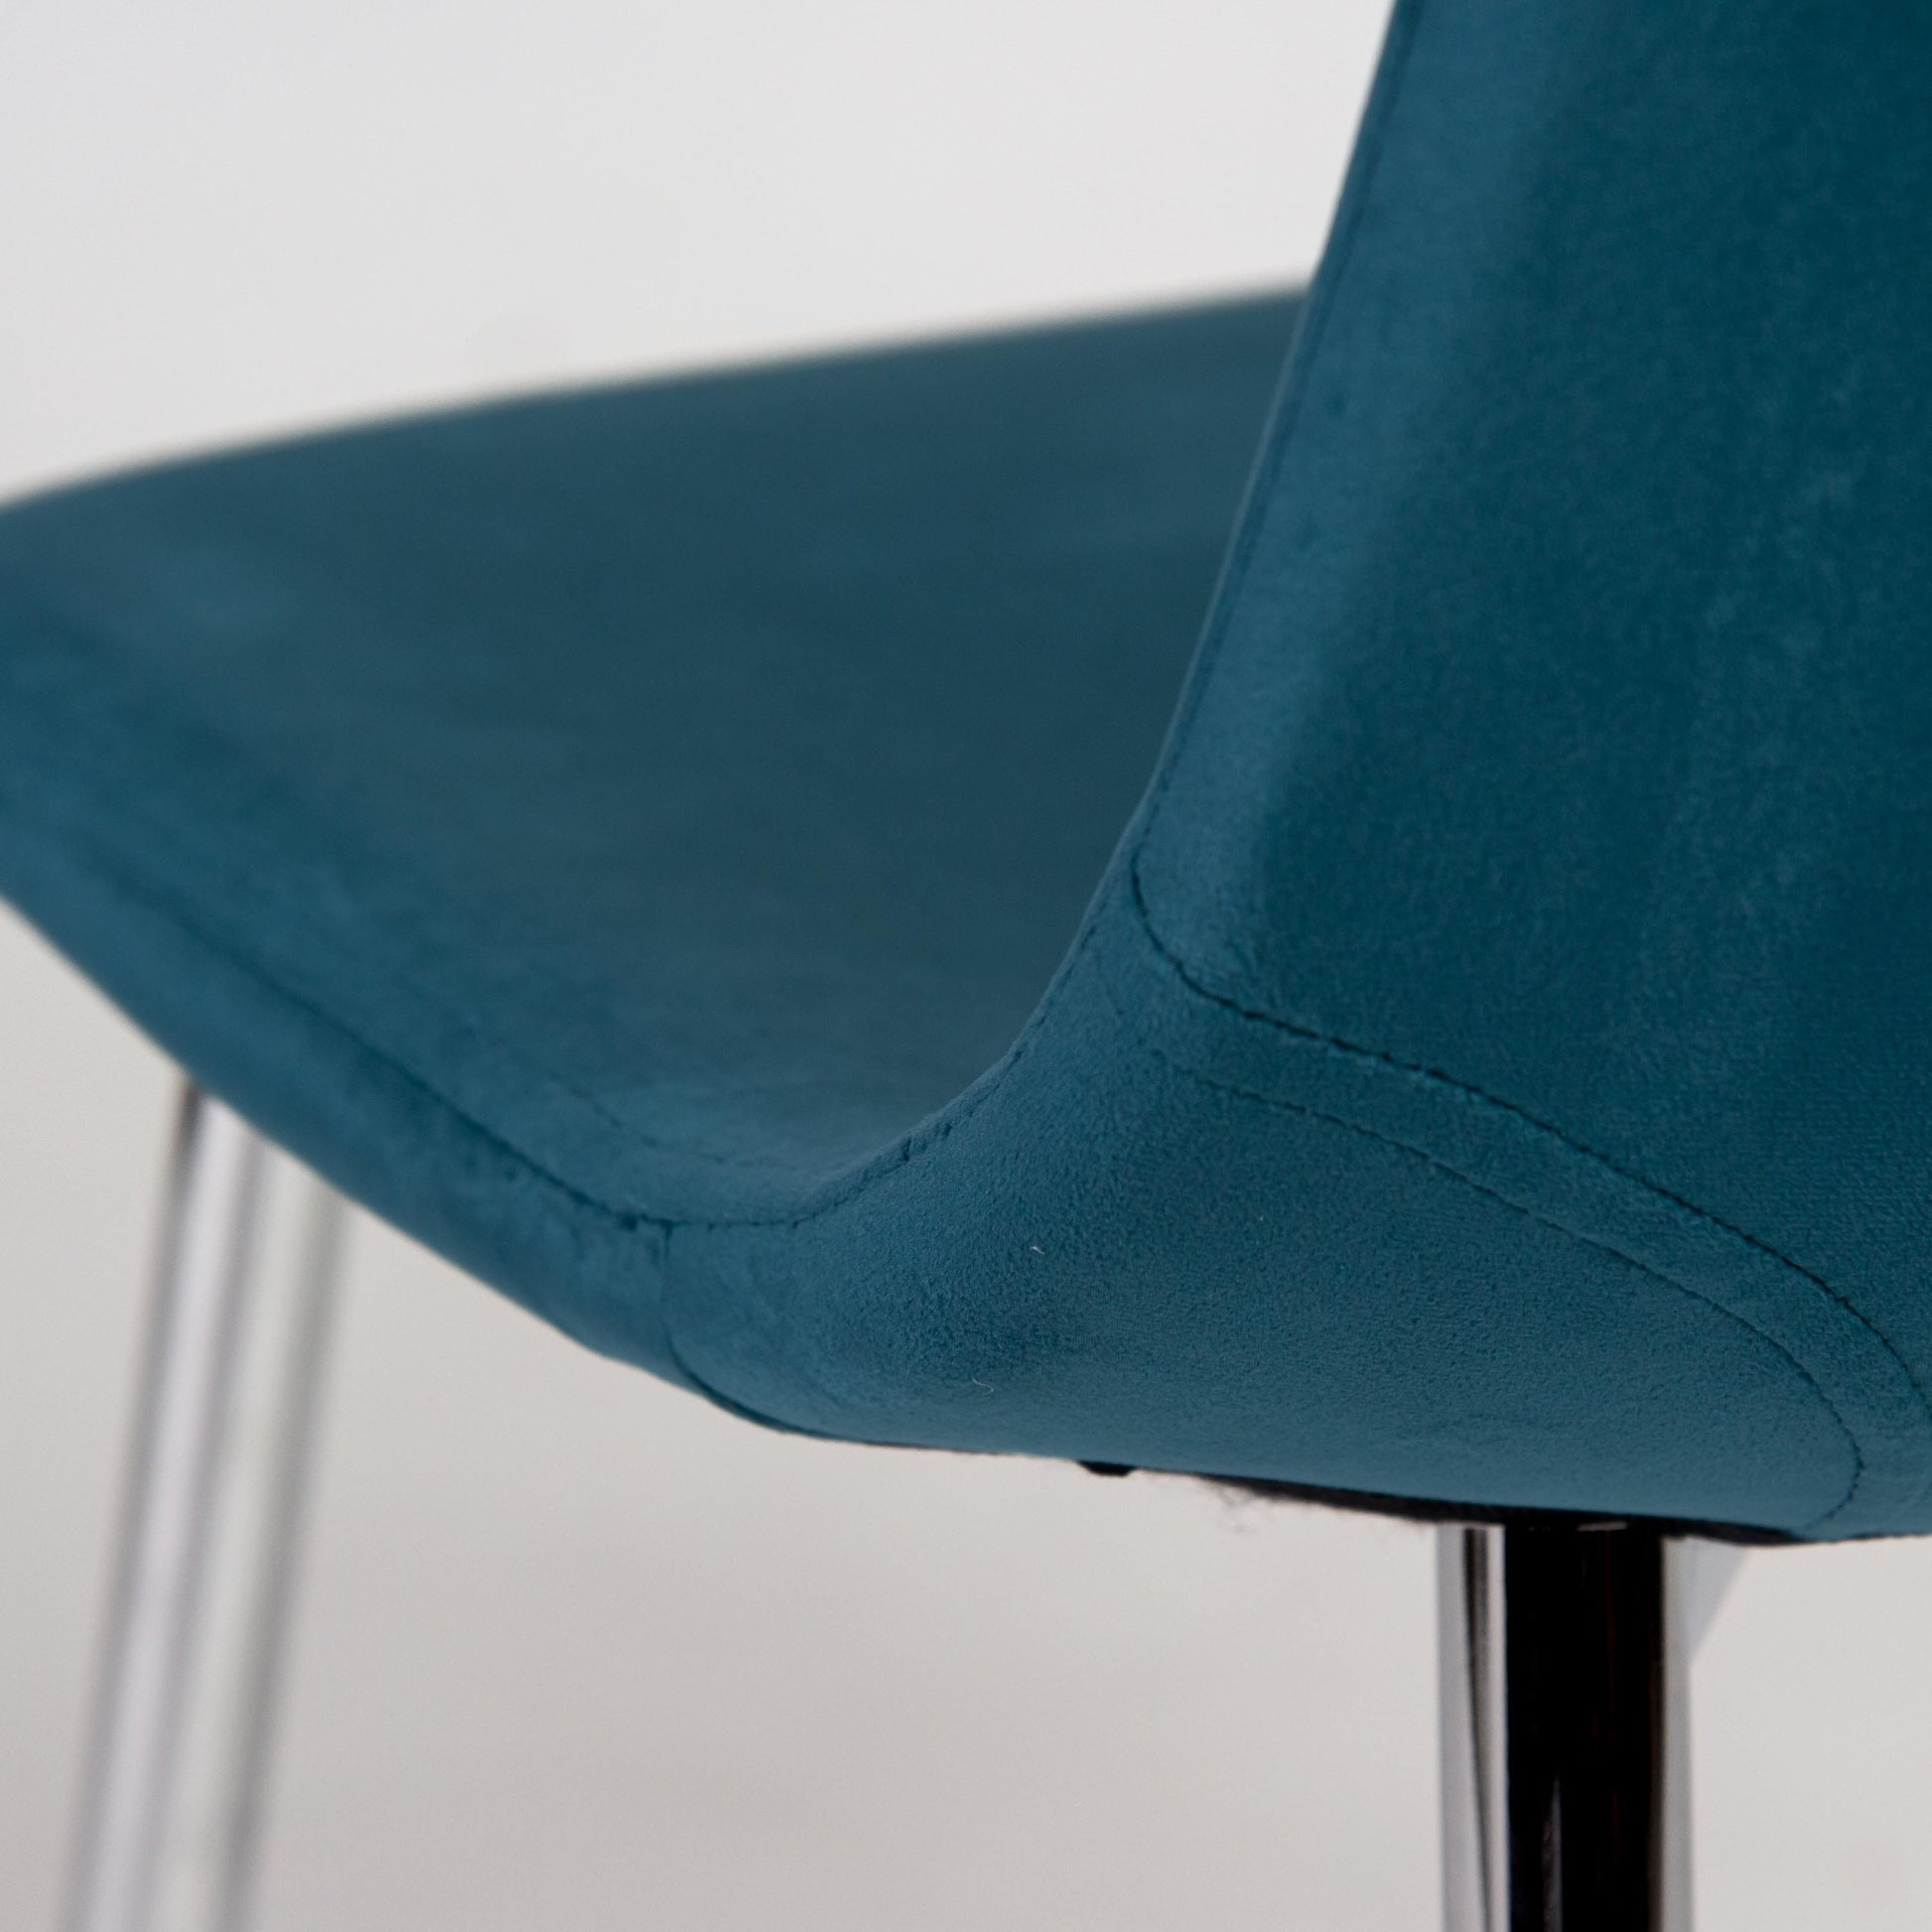 Milo 160cm Chrome Marble Table - Ellis Teal Chrome Chairs